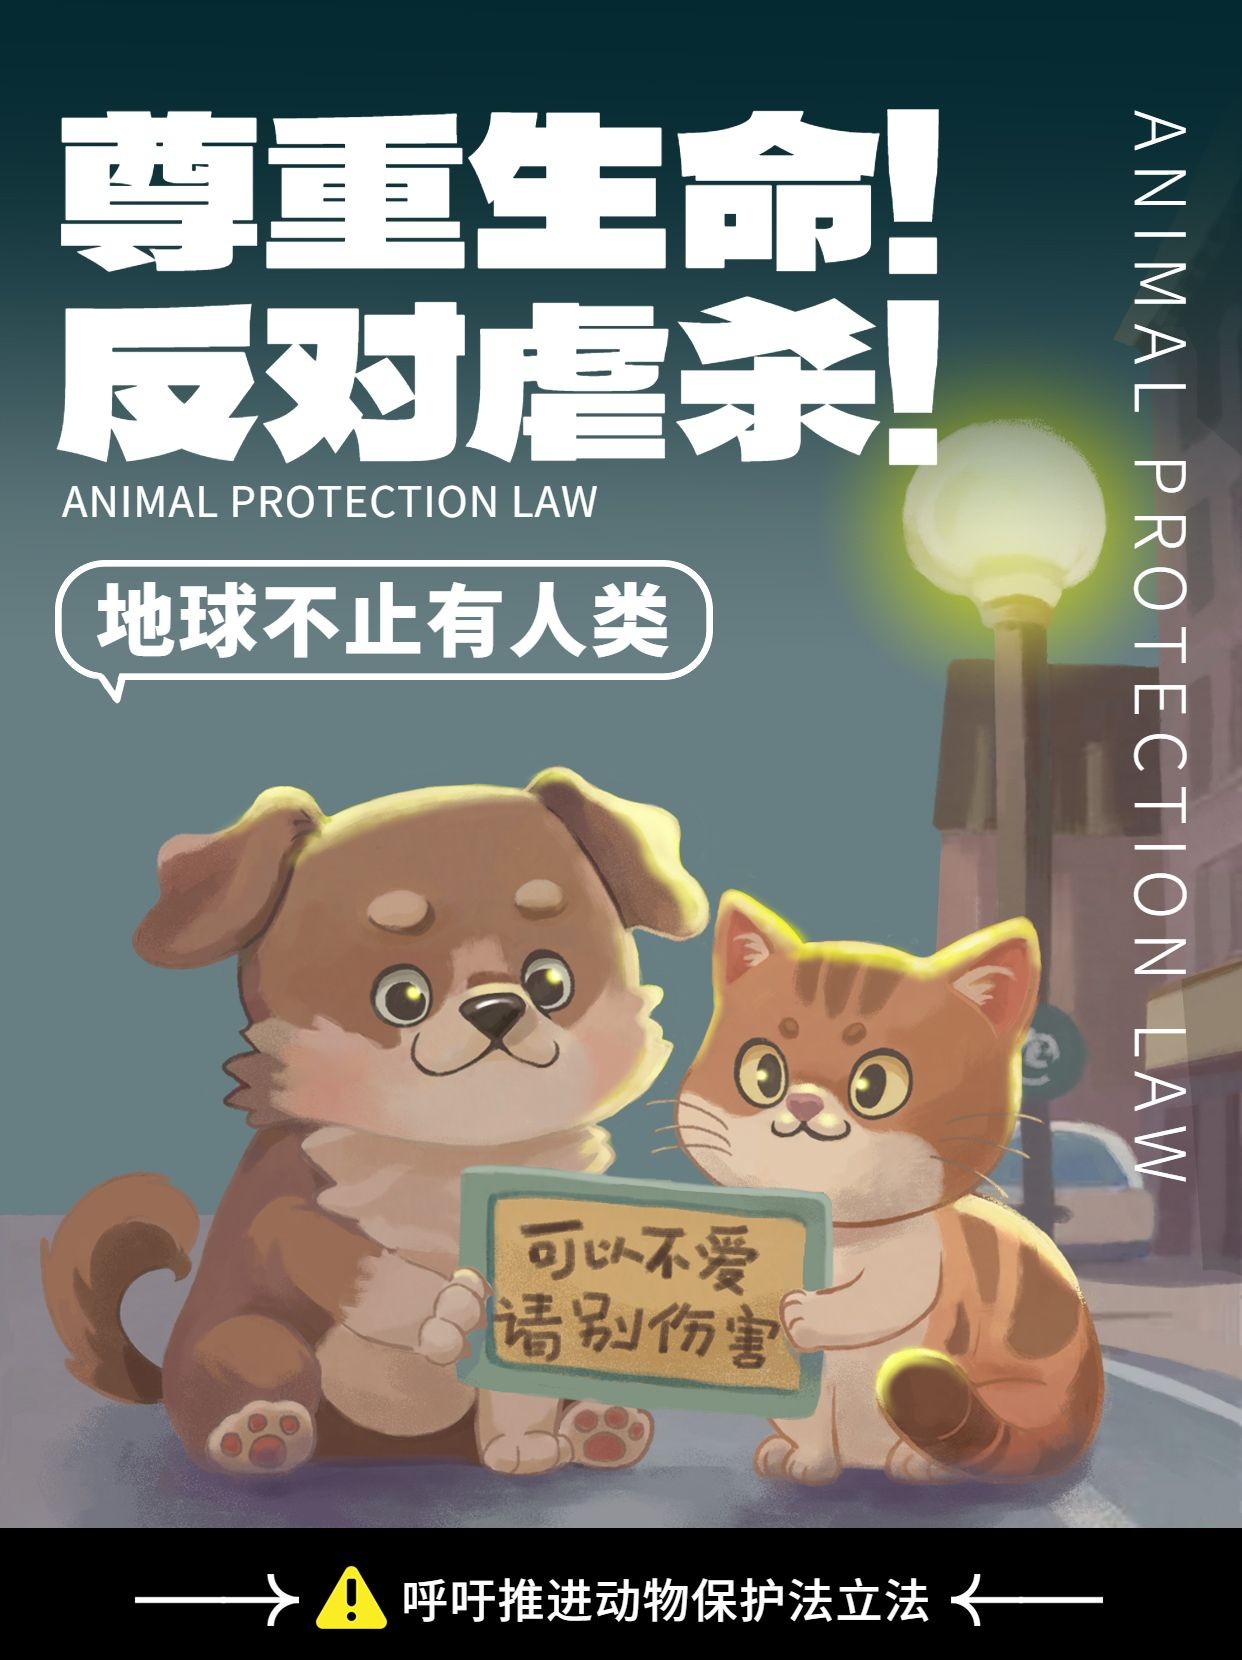 反对动物虐杀呼吁动物保护法宣传推广小红书配图